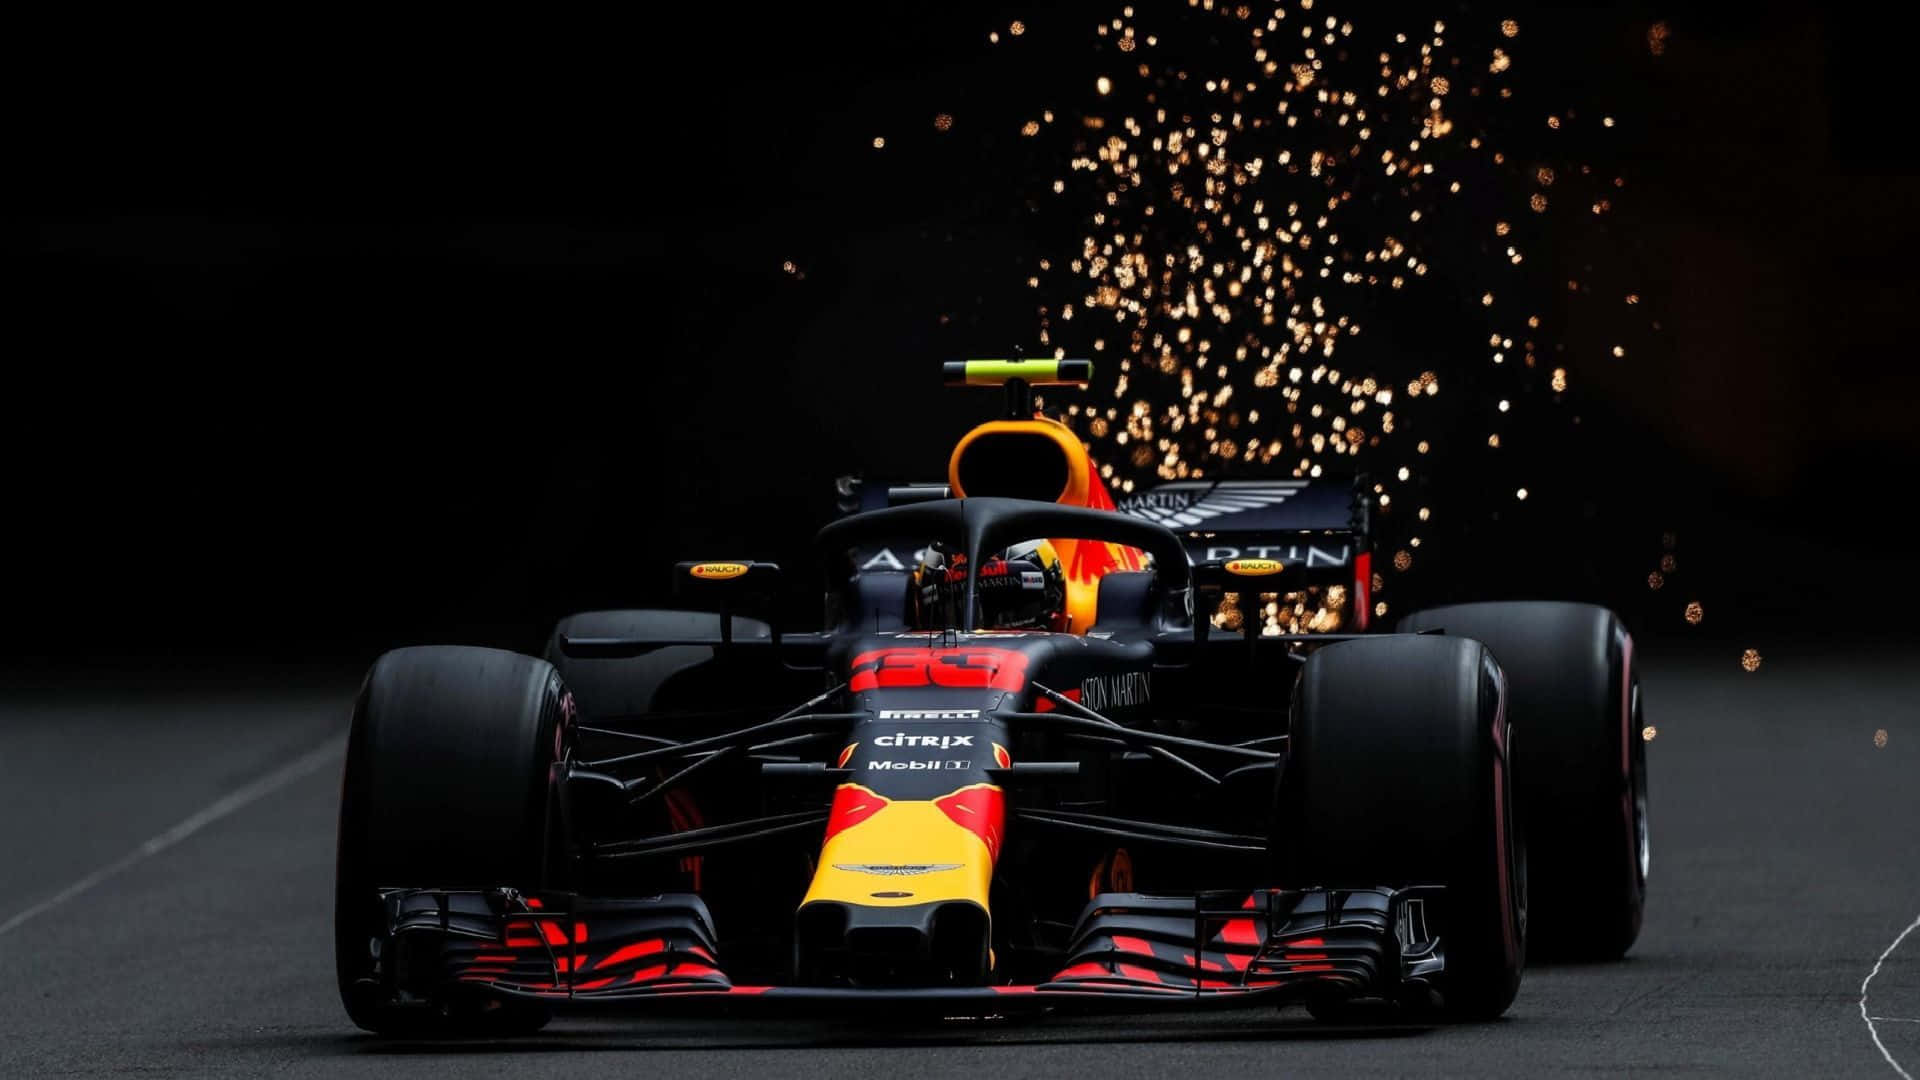 Formula1 Car Sparksat Night Race Wallpaper